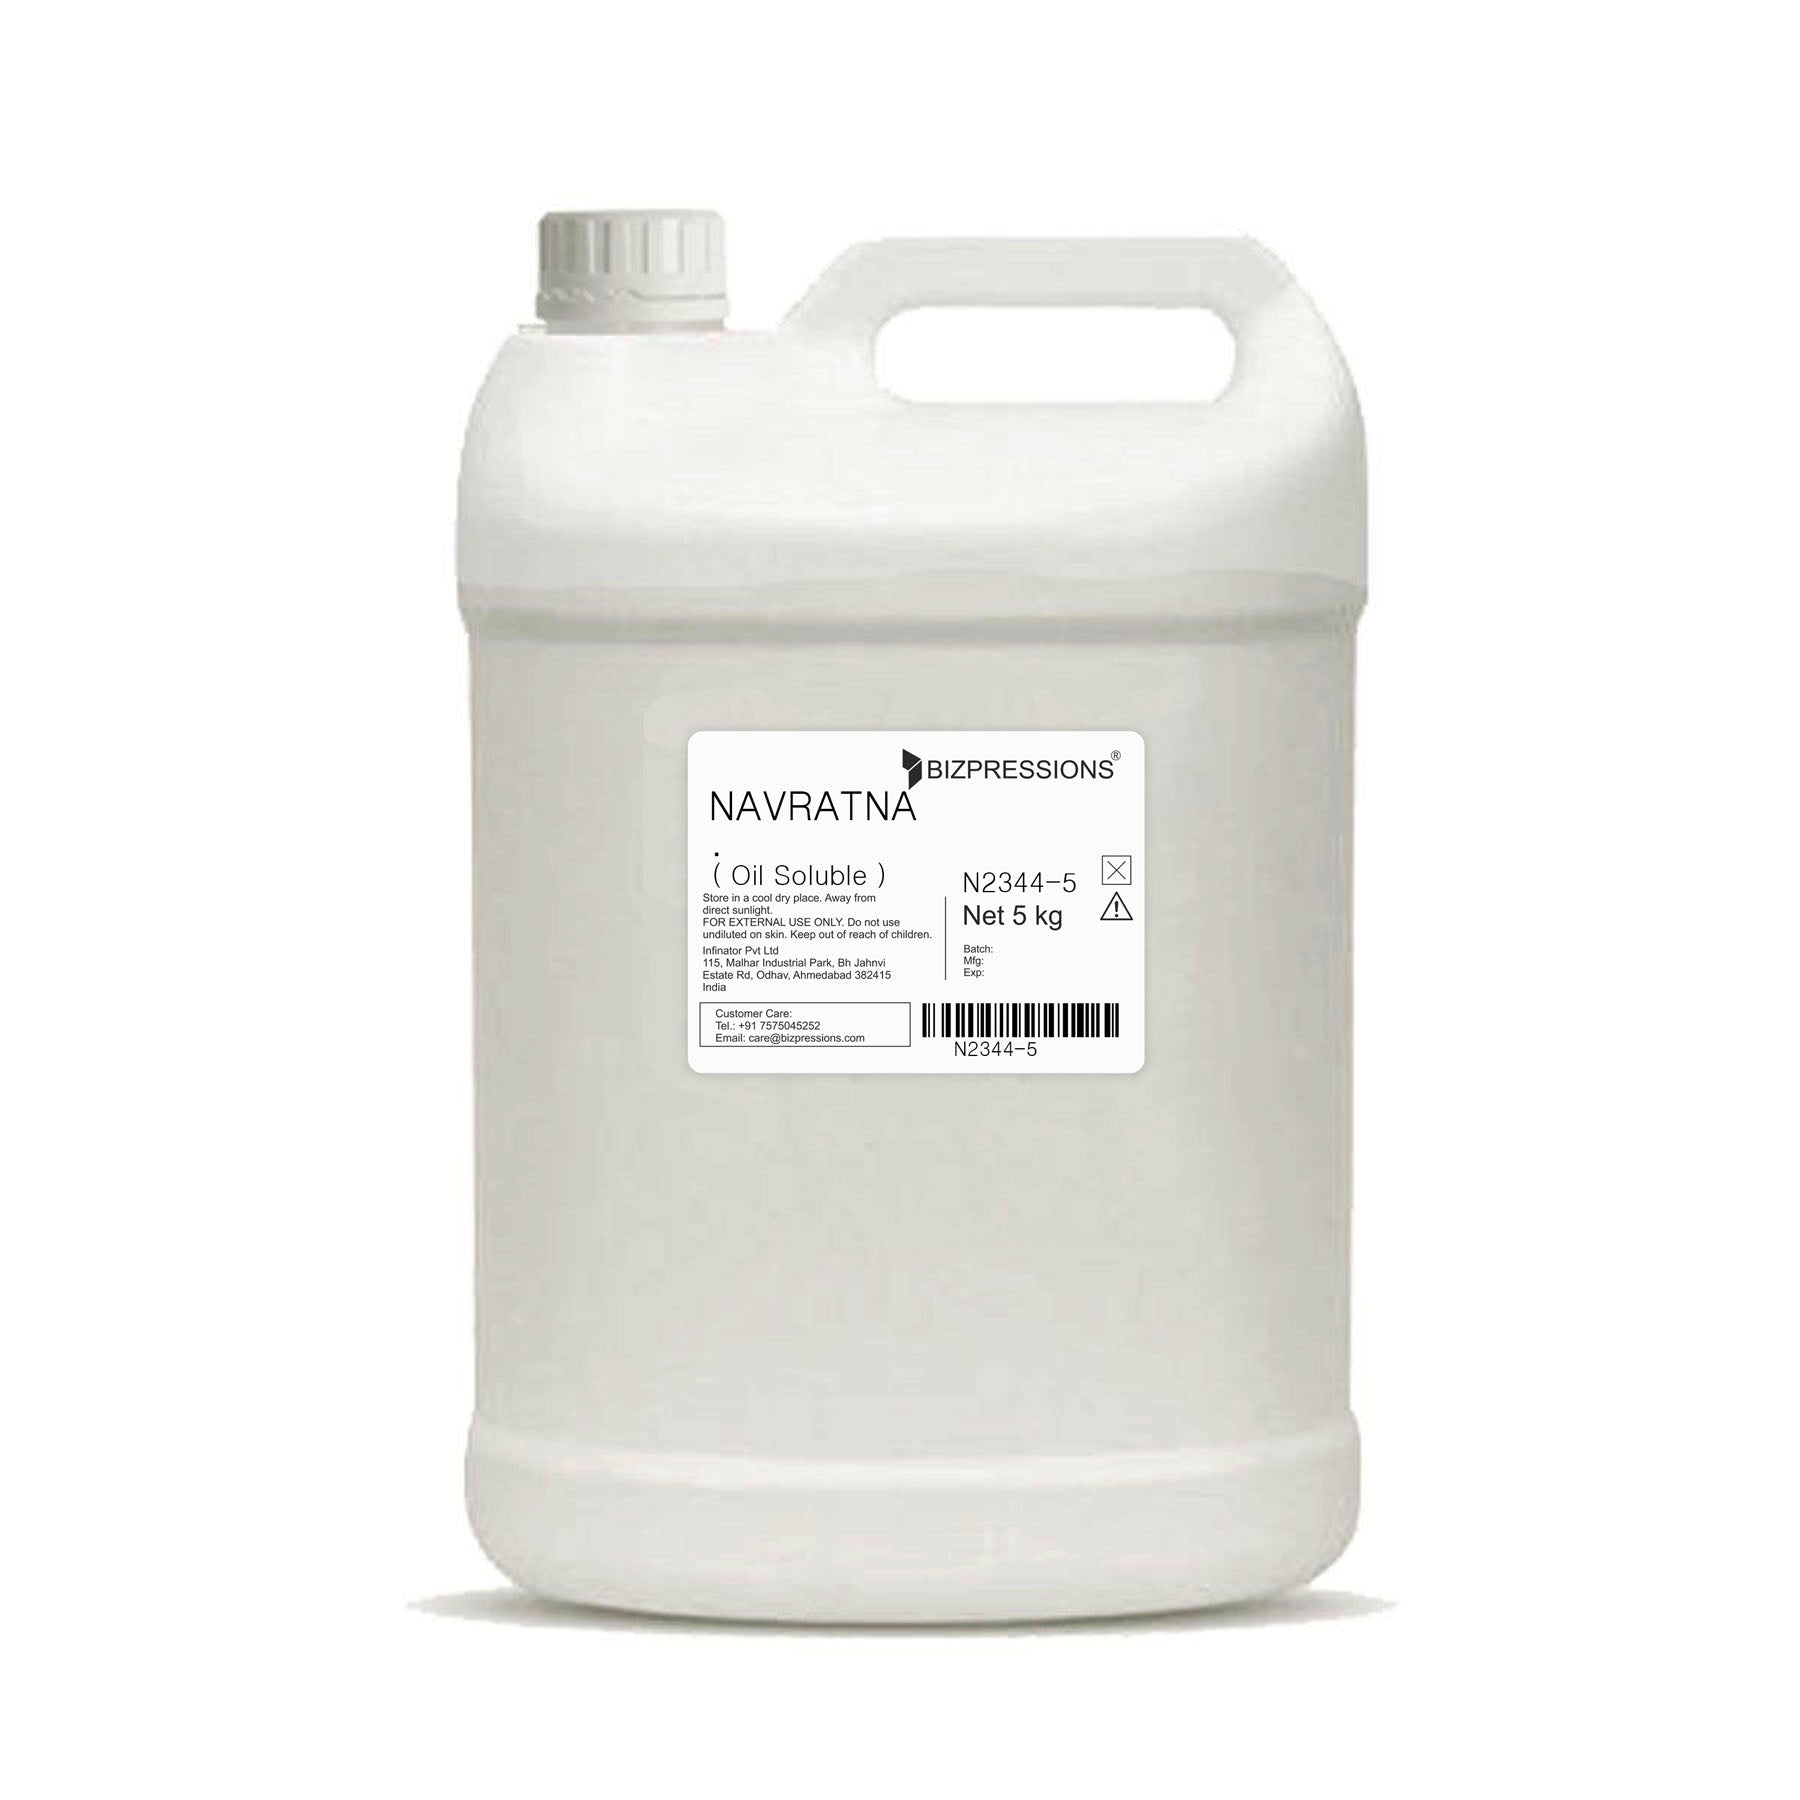 NAVRATNA - Fragrance ( Oil Soluble ) - 5 kg